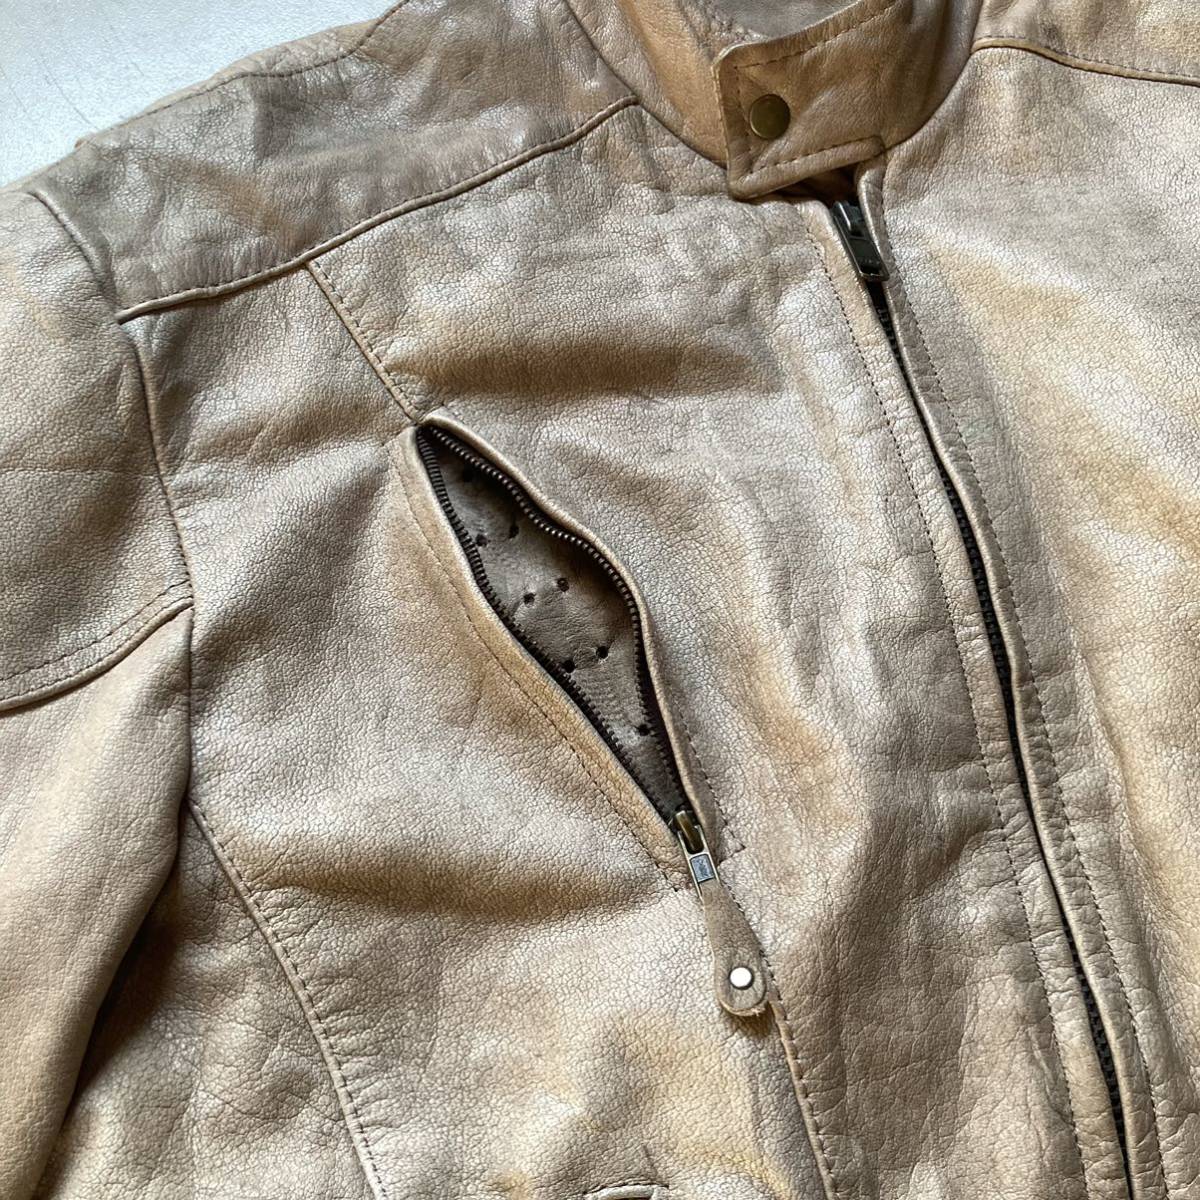 逆八の字 beige/brown leather jacket レザージャケット 革ジャン 裏地メッシュ_画像7